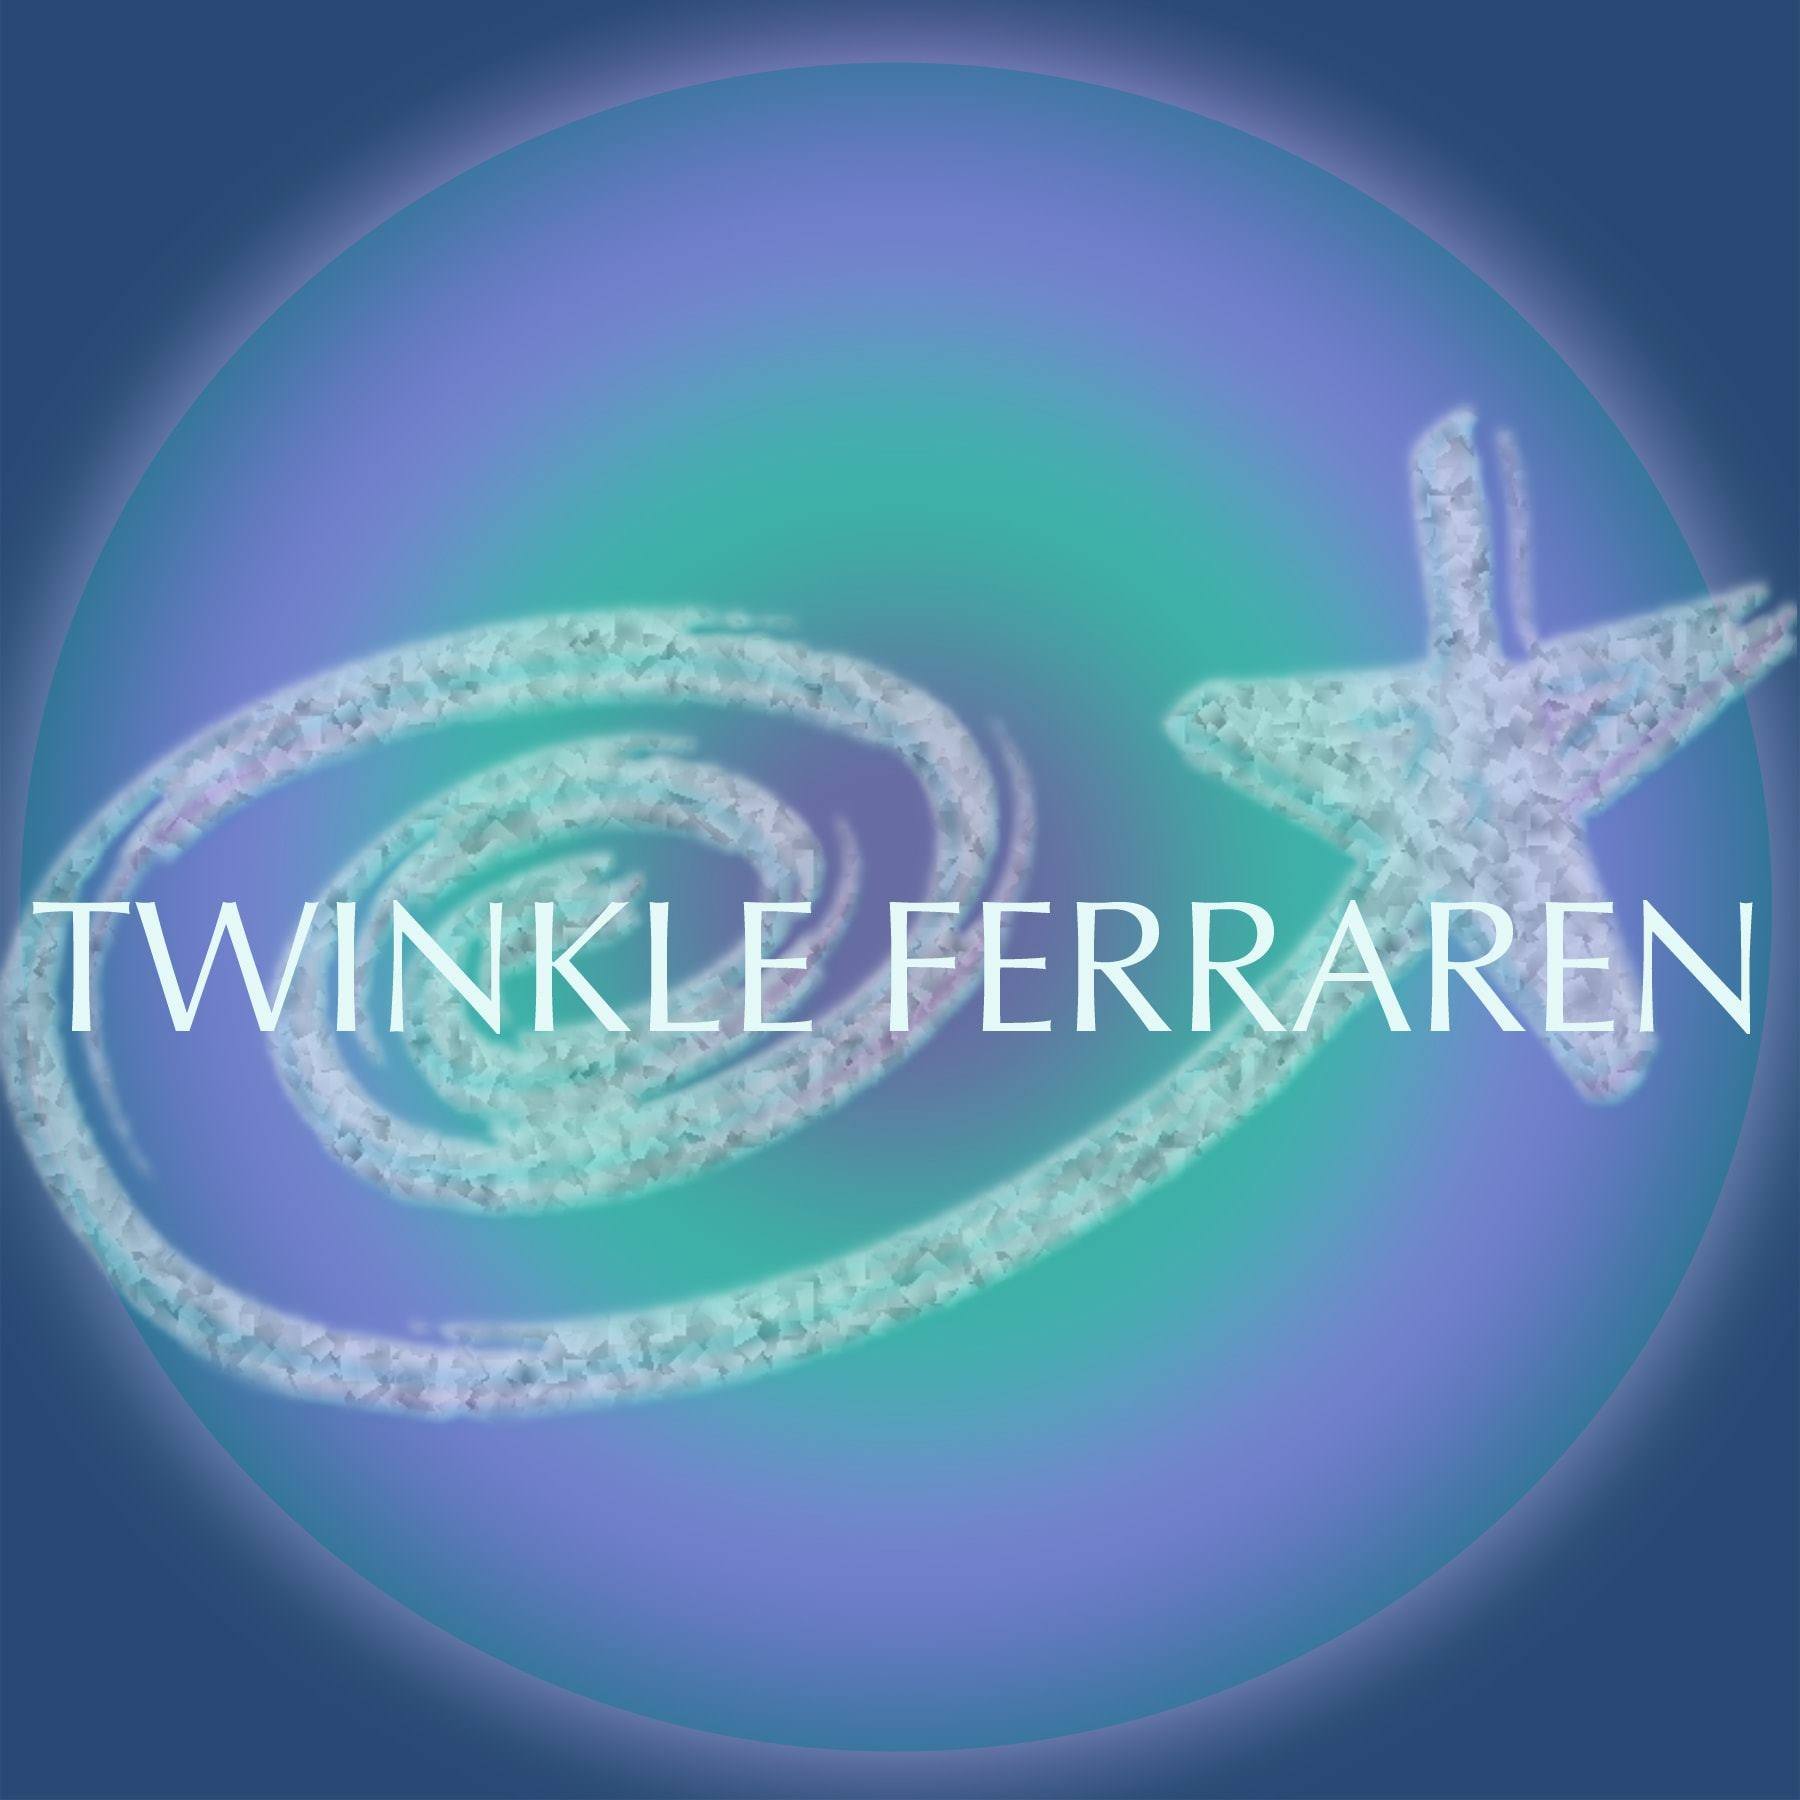 Twinkle Ferraren